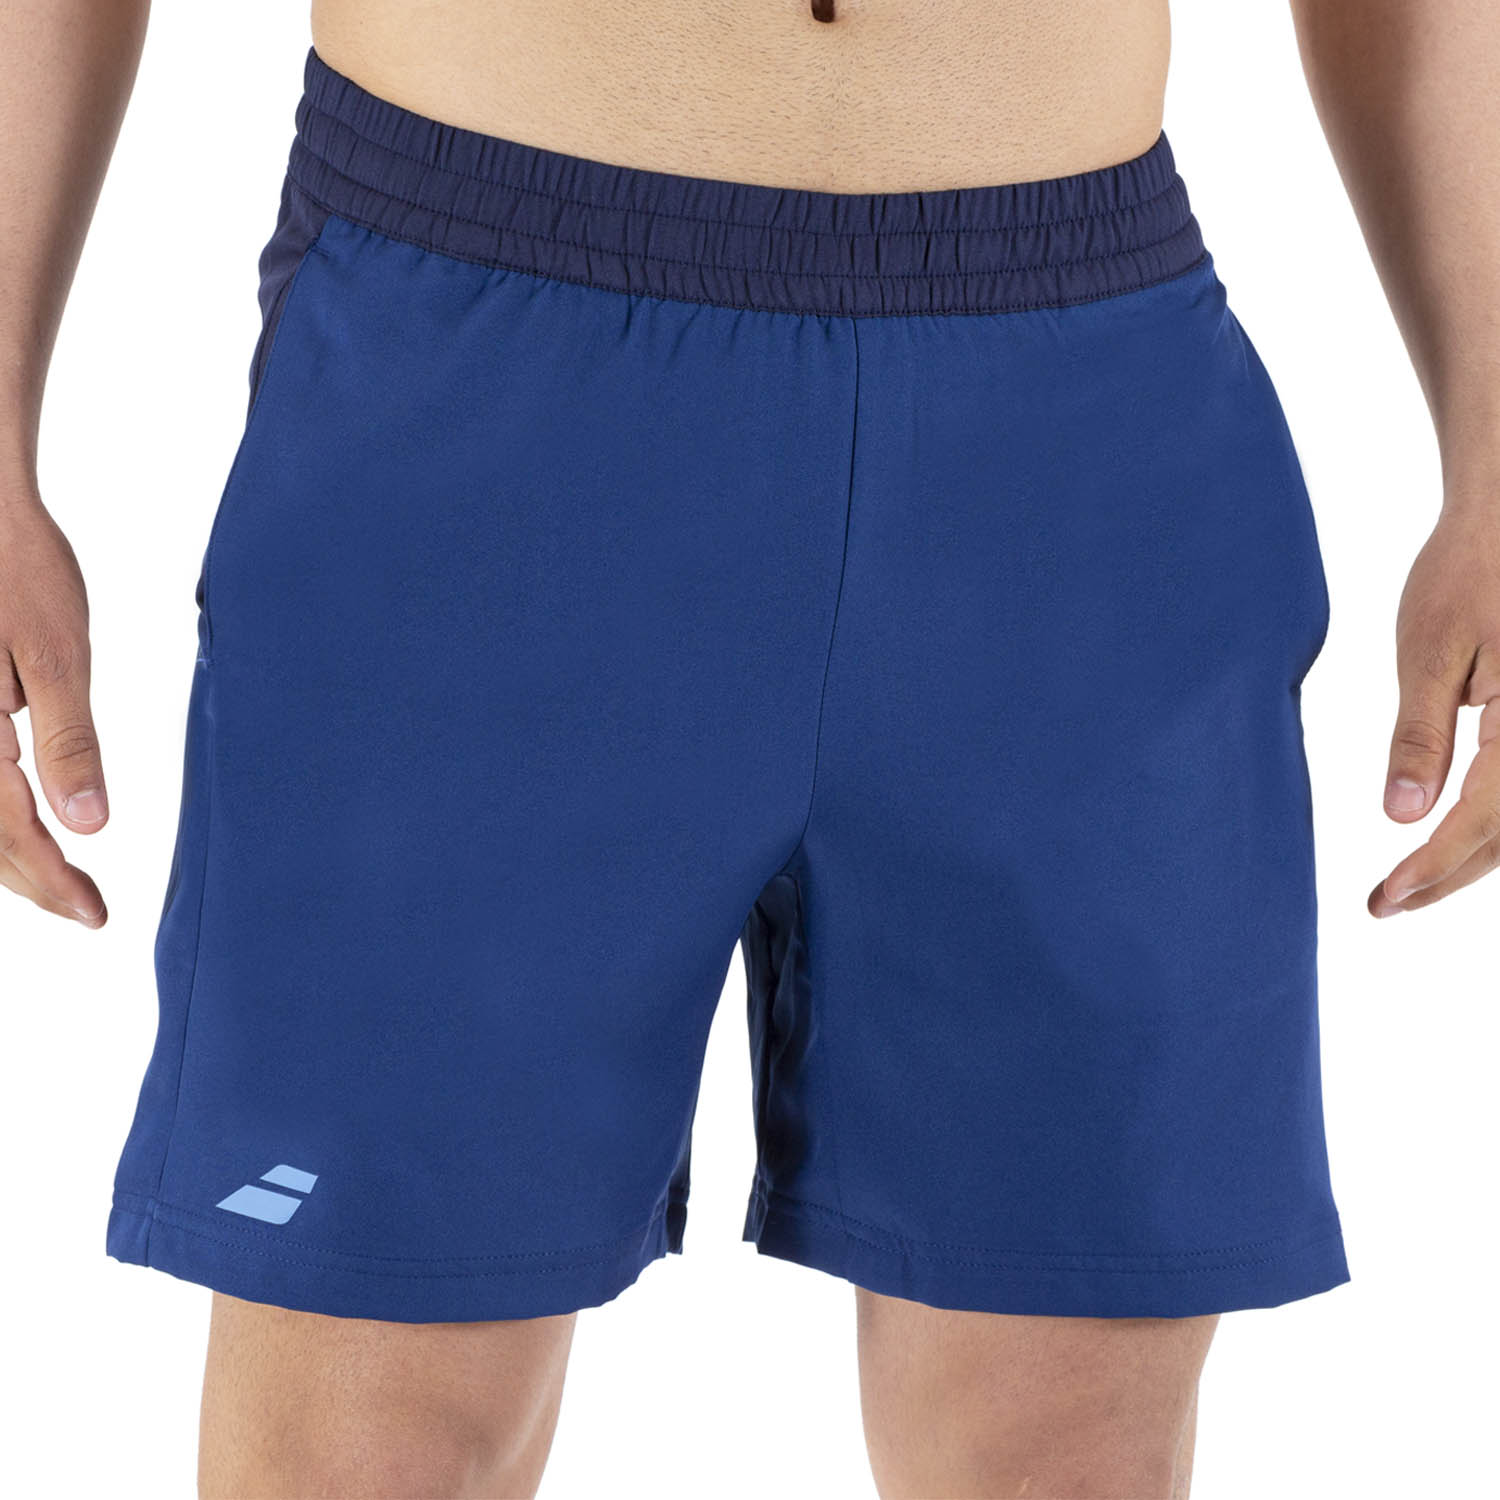 Babolat Core taglia M colore: blu Pantaloncini da tennis da uomo 